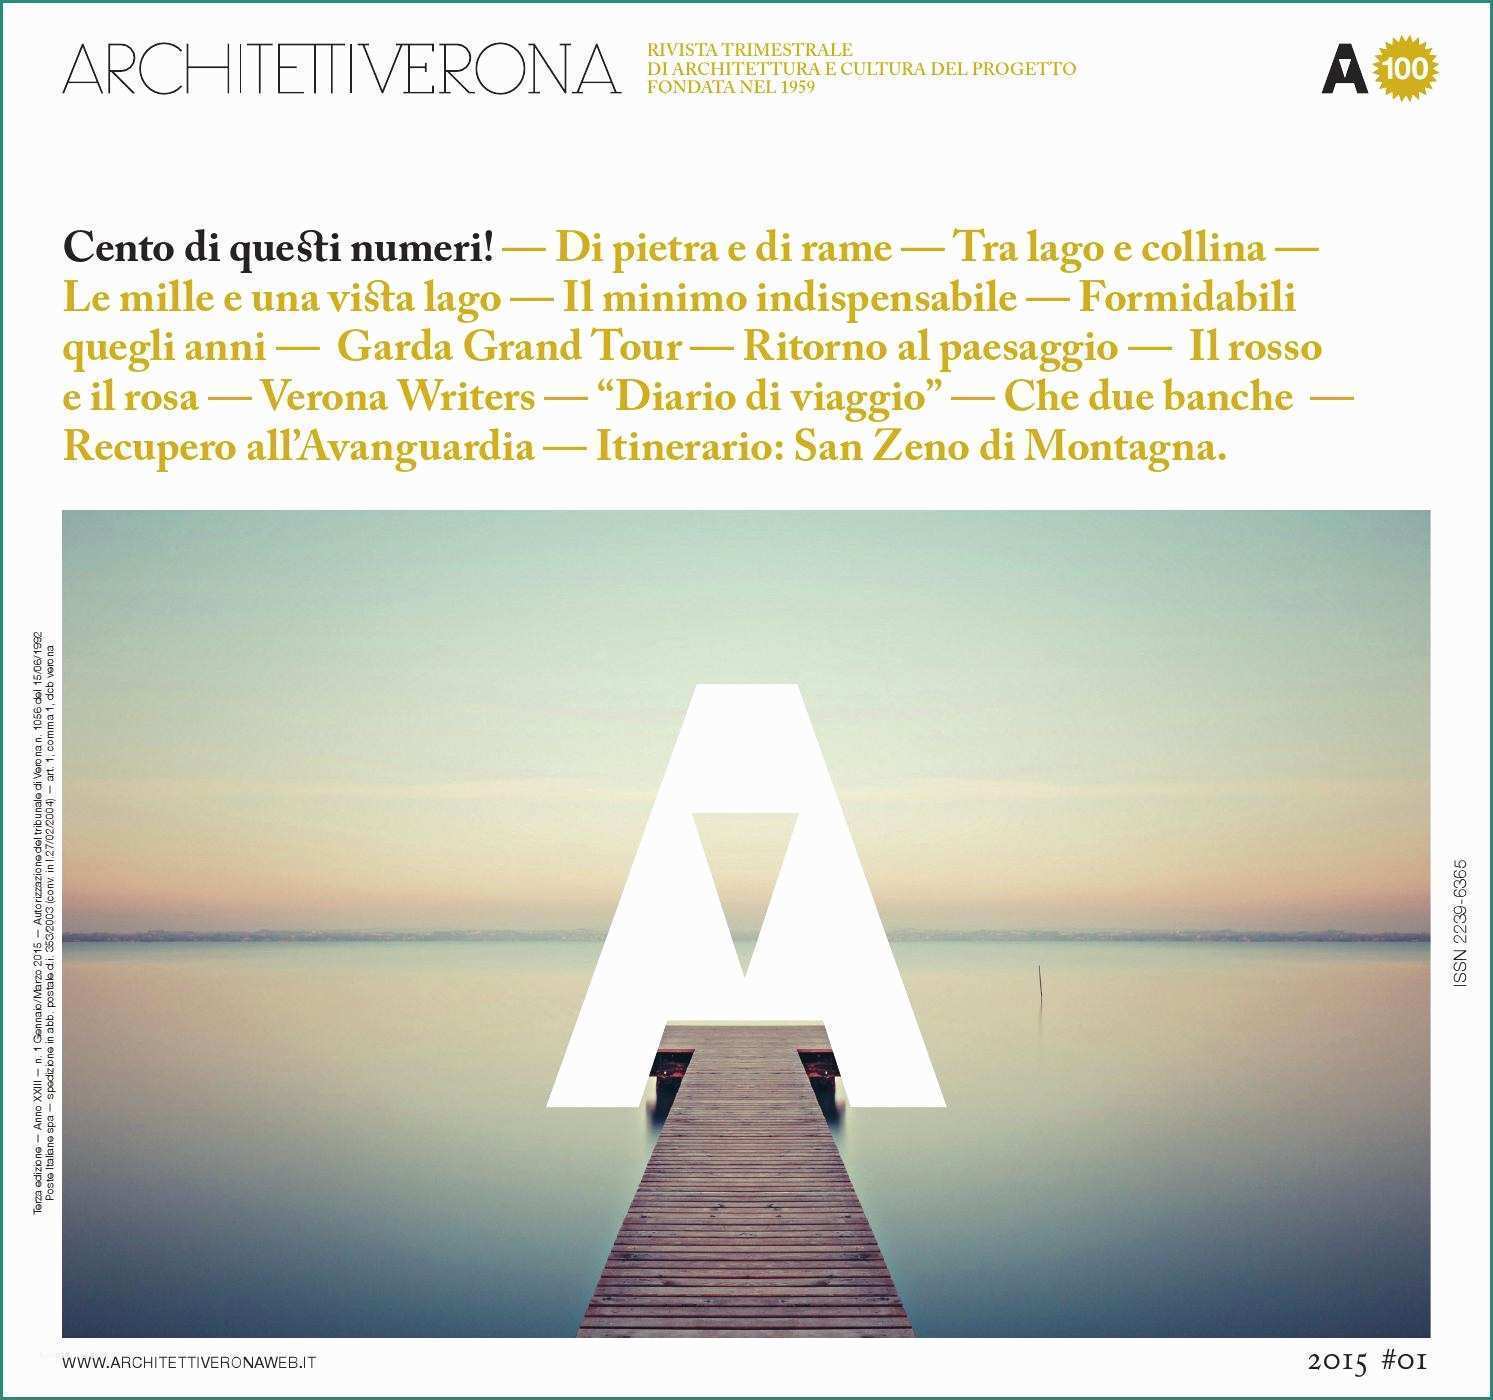 Monoblocchi Abitativi Usati E Architettiverona 100 by Architettiverona issuu